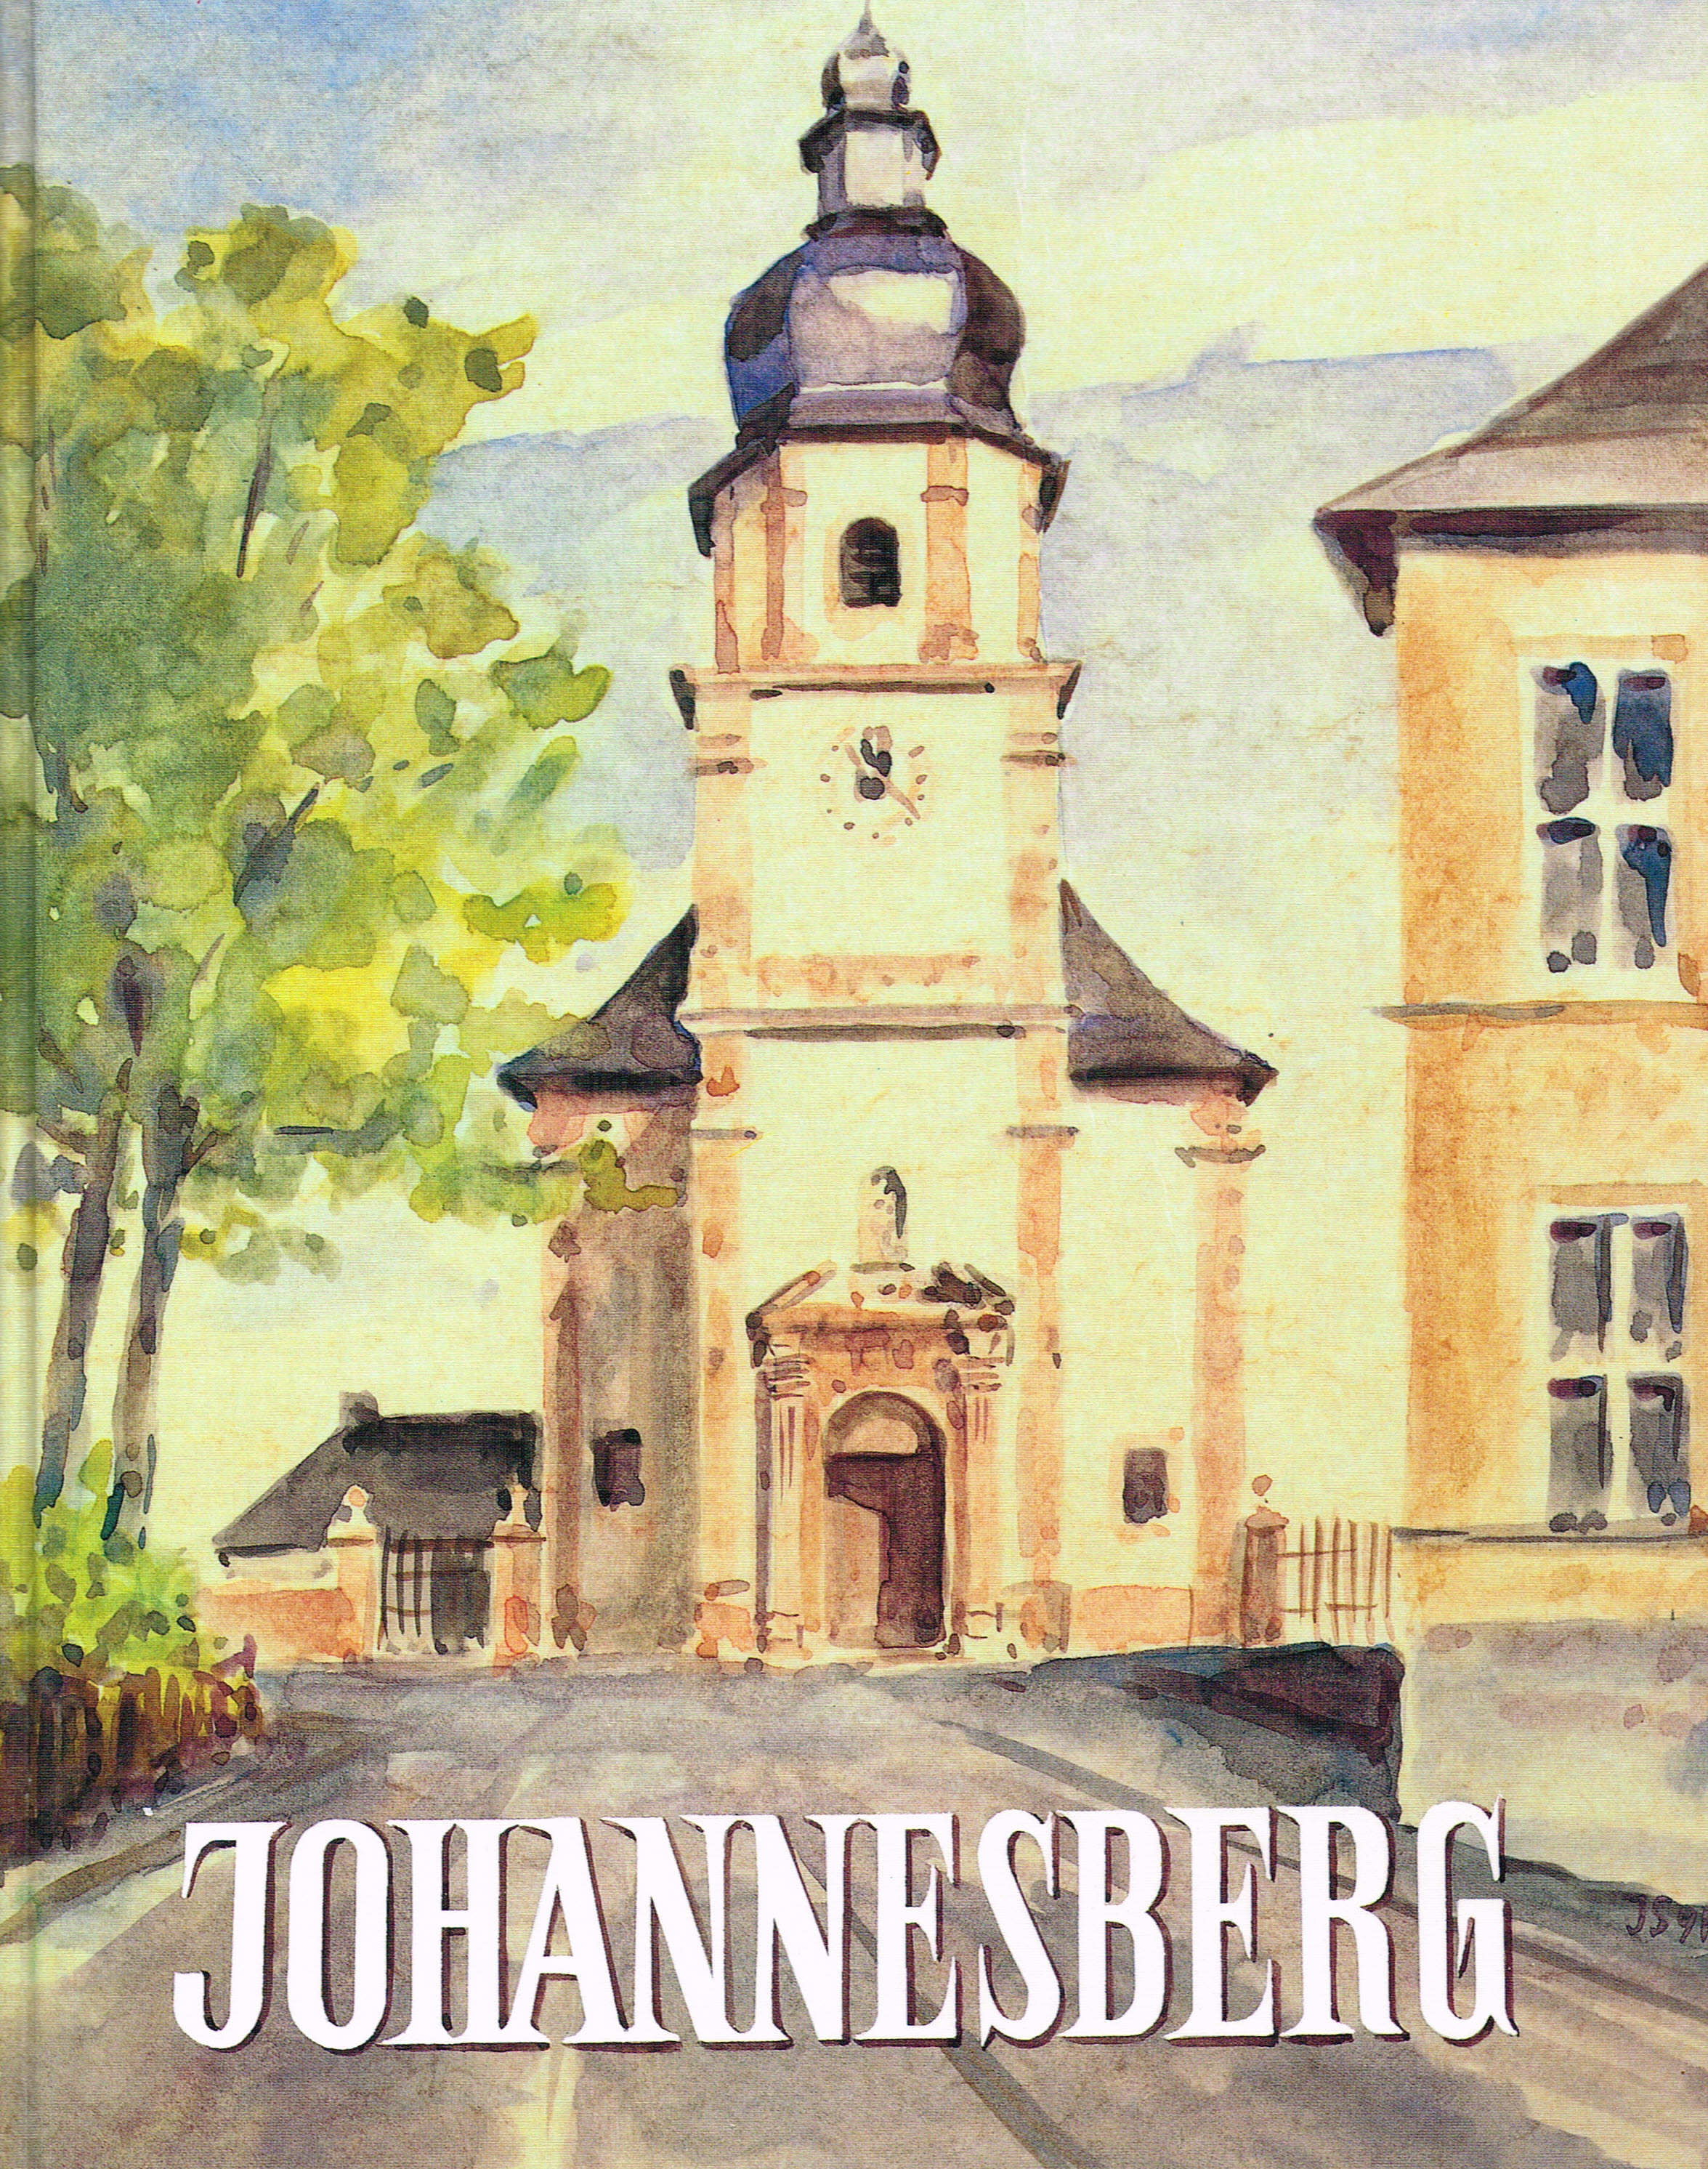 Das Bild zeigt eine Kirche mit dem Text Johannesberg davor